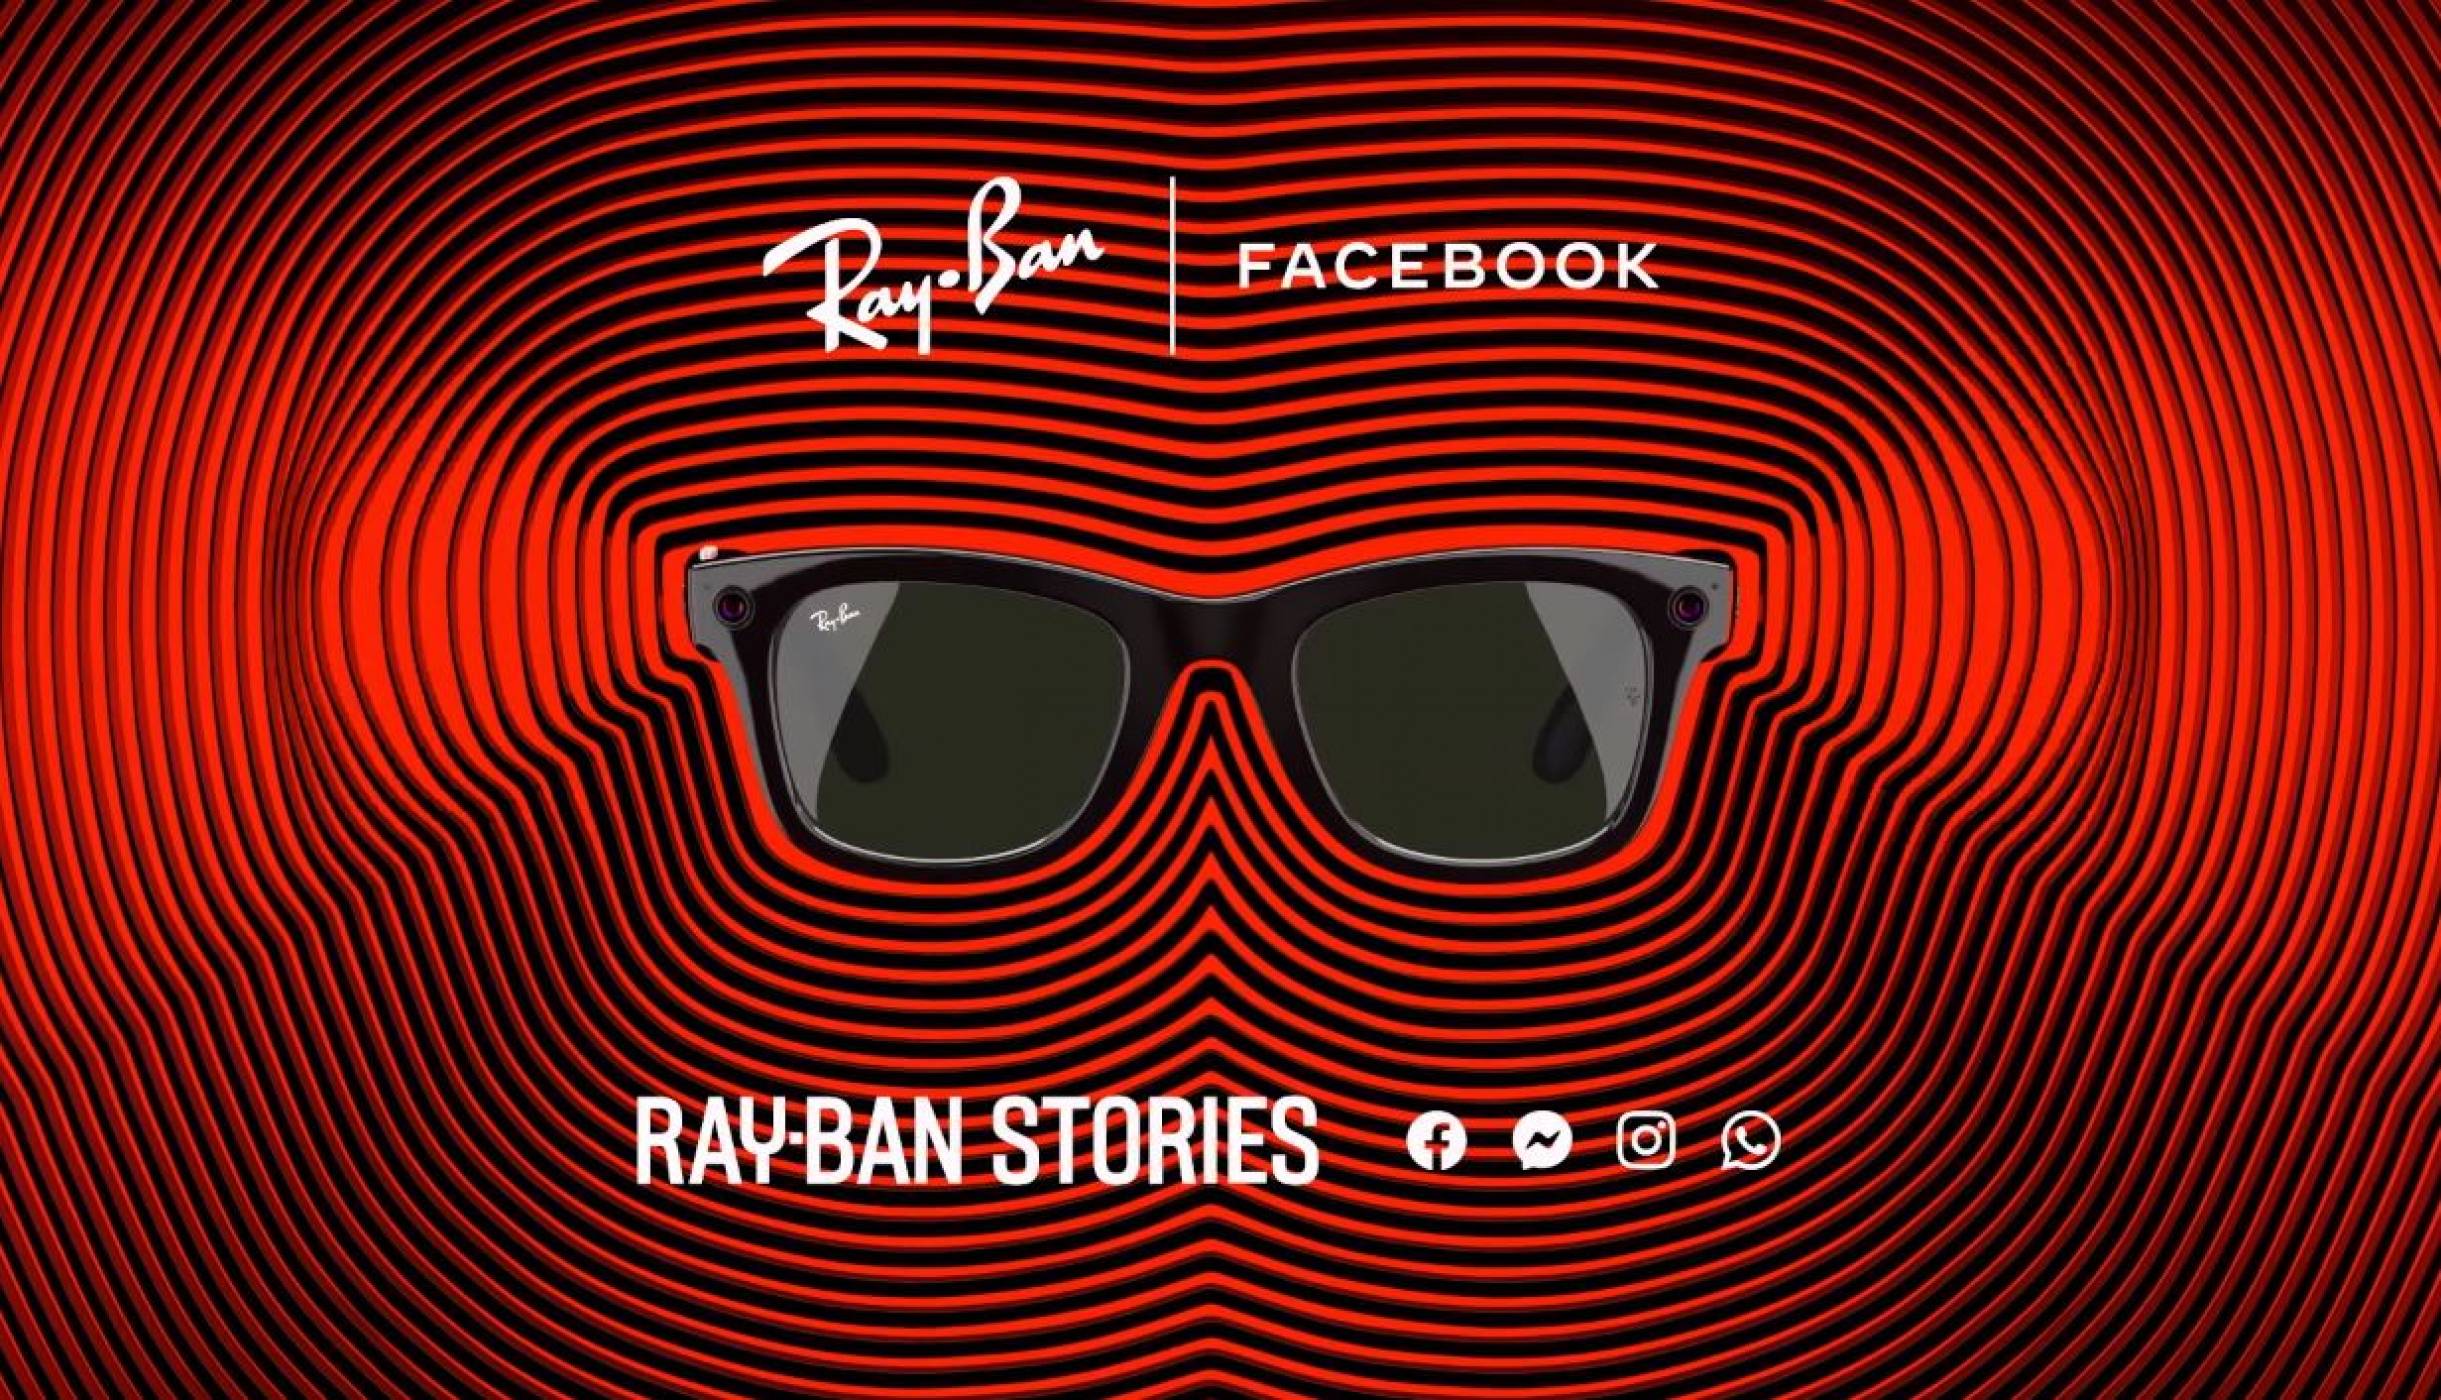 Началото на нова епоха или еднодневка: очилата на Facebook и Ray-Ban са тук (ОБЗОР)